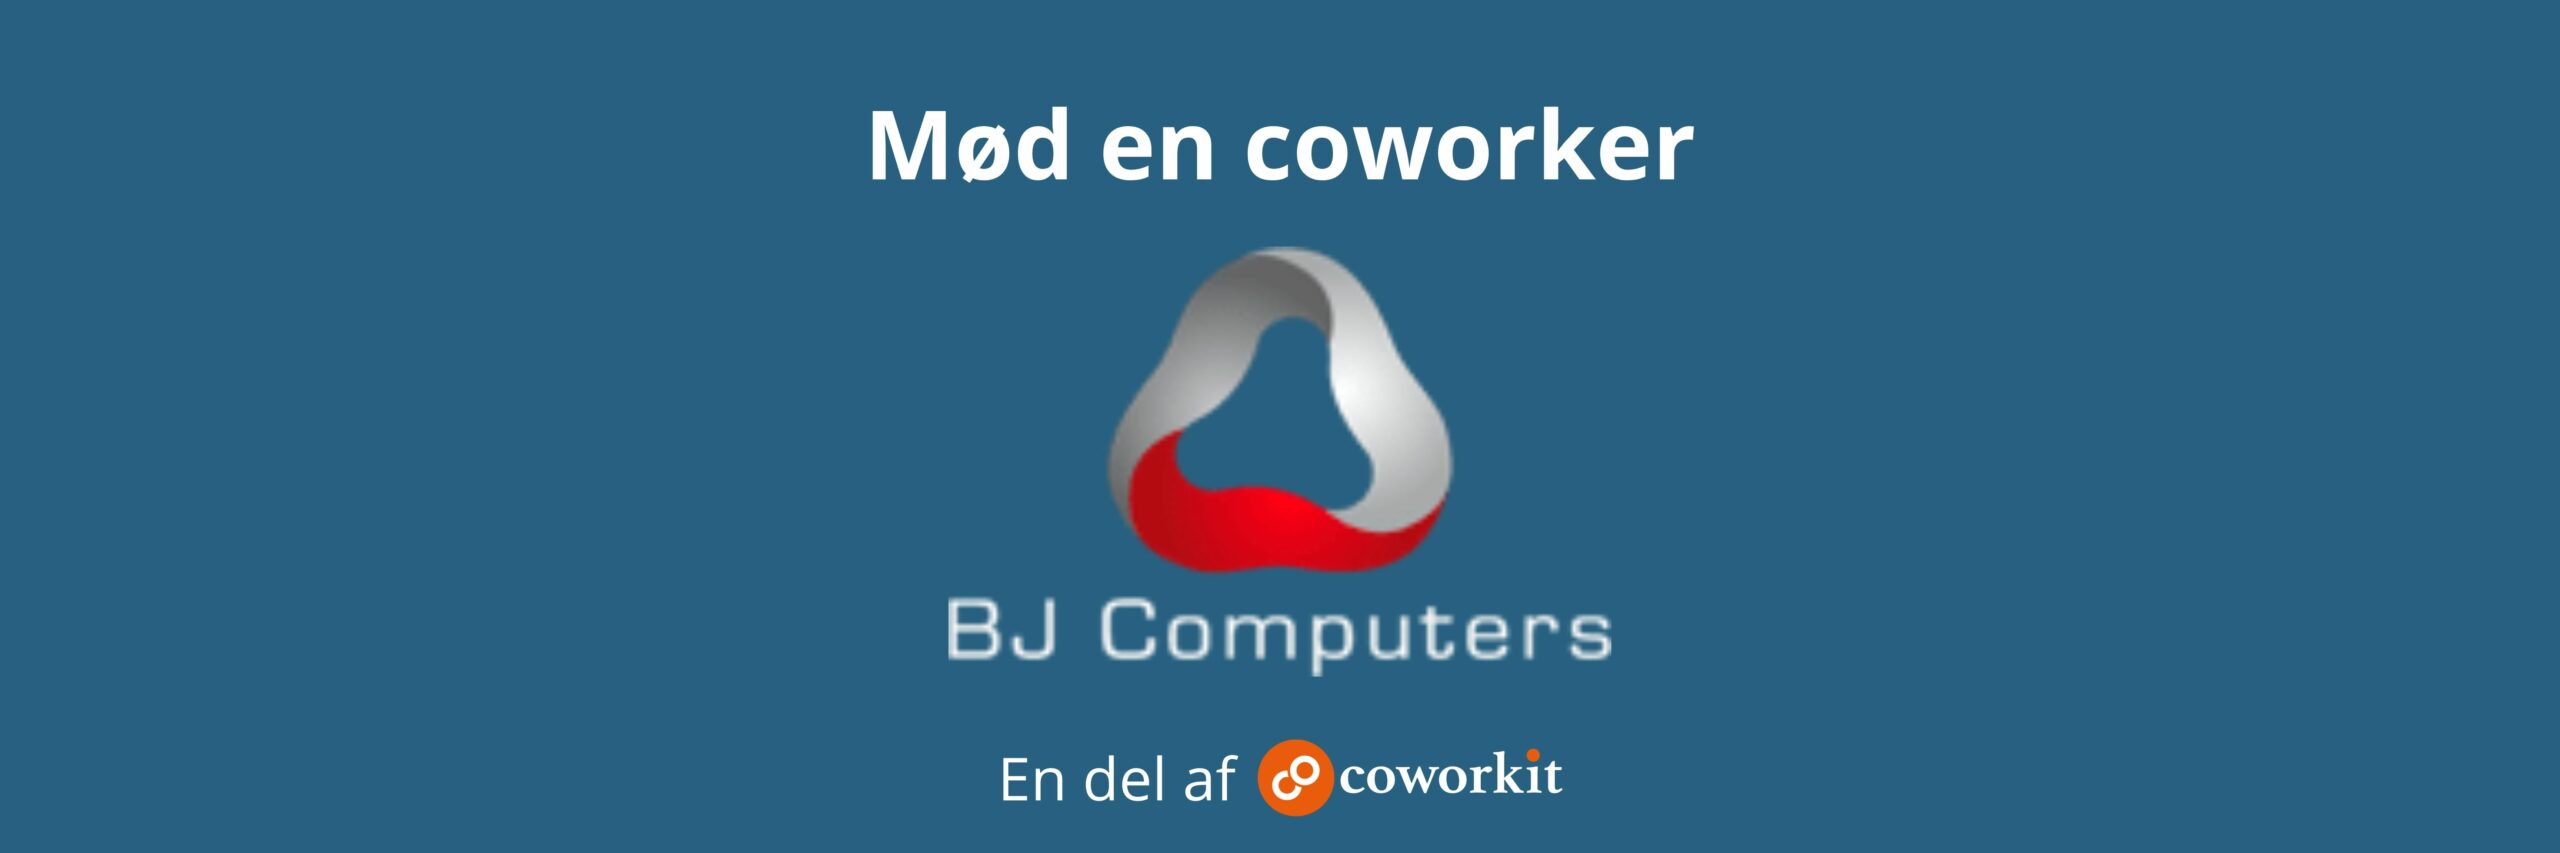 BJ-Computers-partner-coworkit